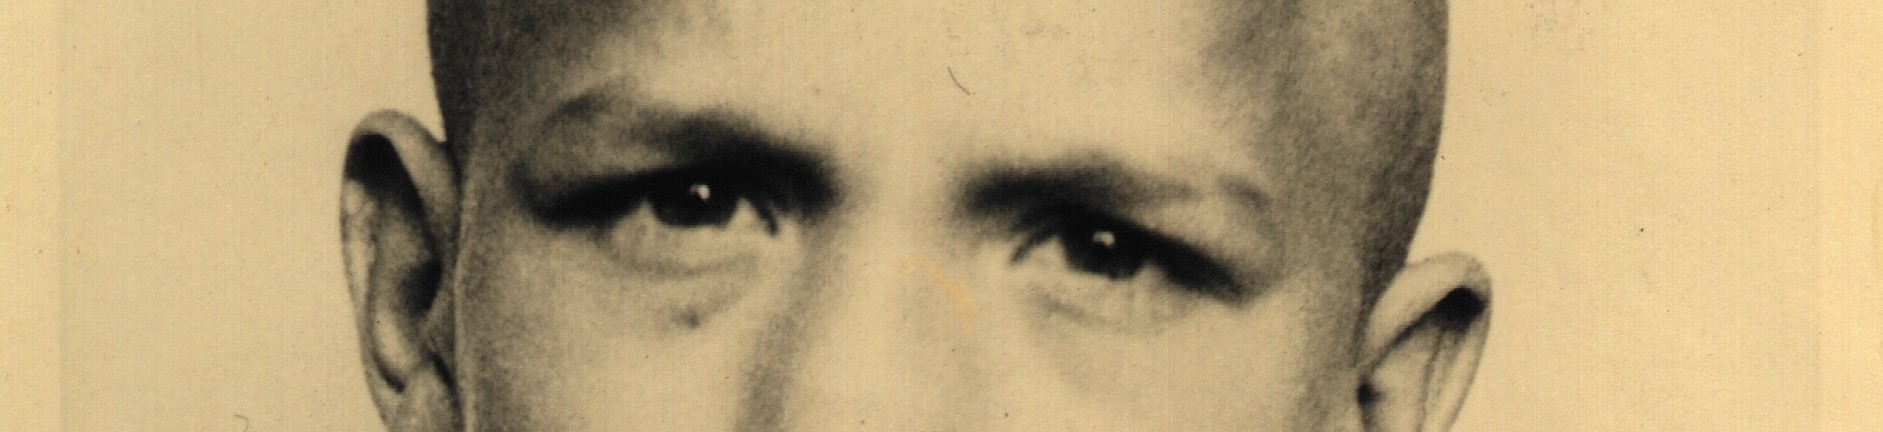 Schwarz-weiß-Fotografie: Augenpartie von Ernst Lossa